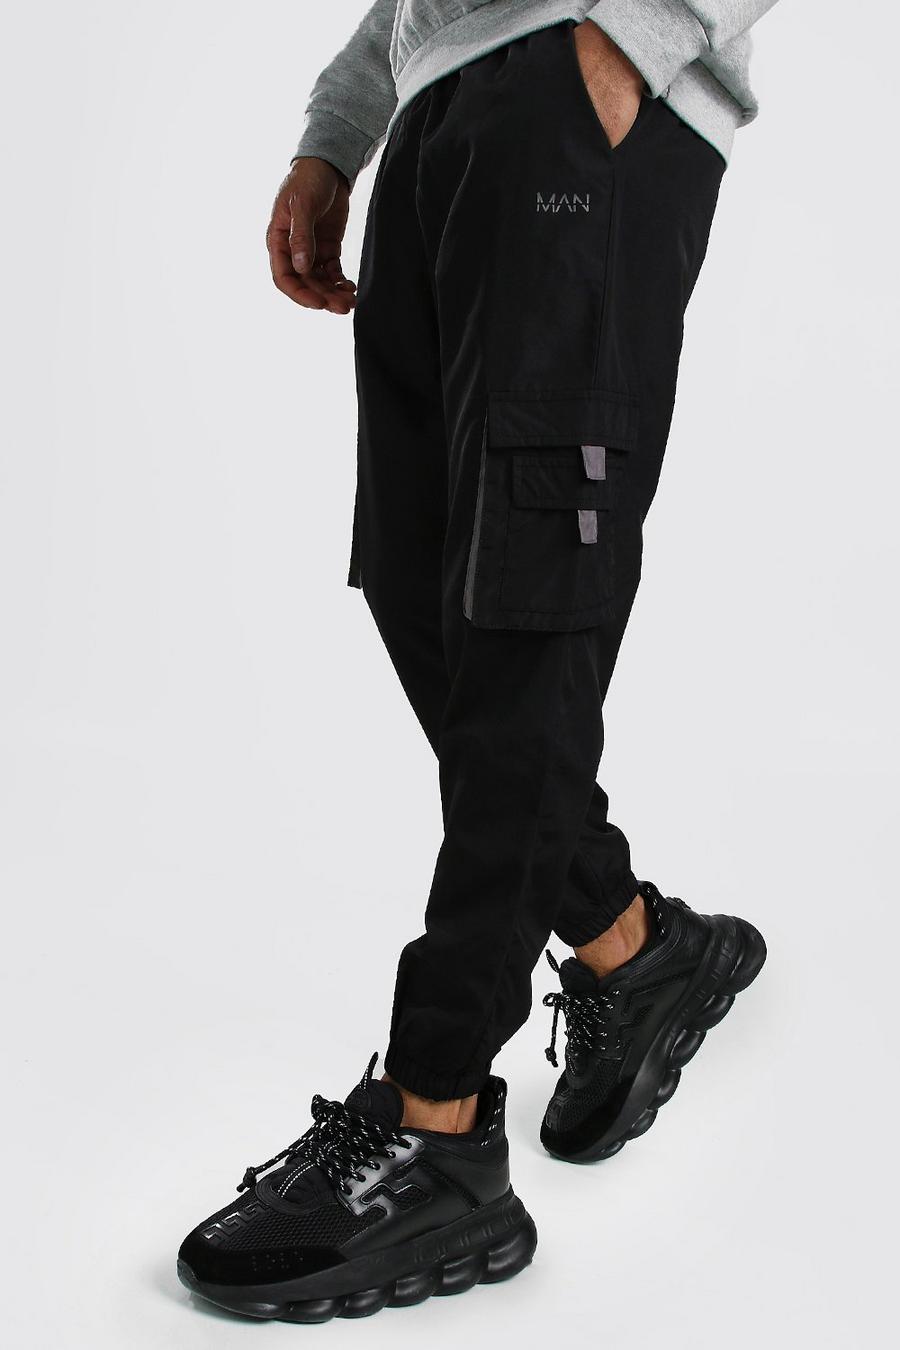 שחור מכנסי ריצה דגמ"ח מעטפת עם כיתוב Original MAN ותוויות image number 1